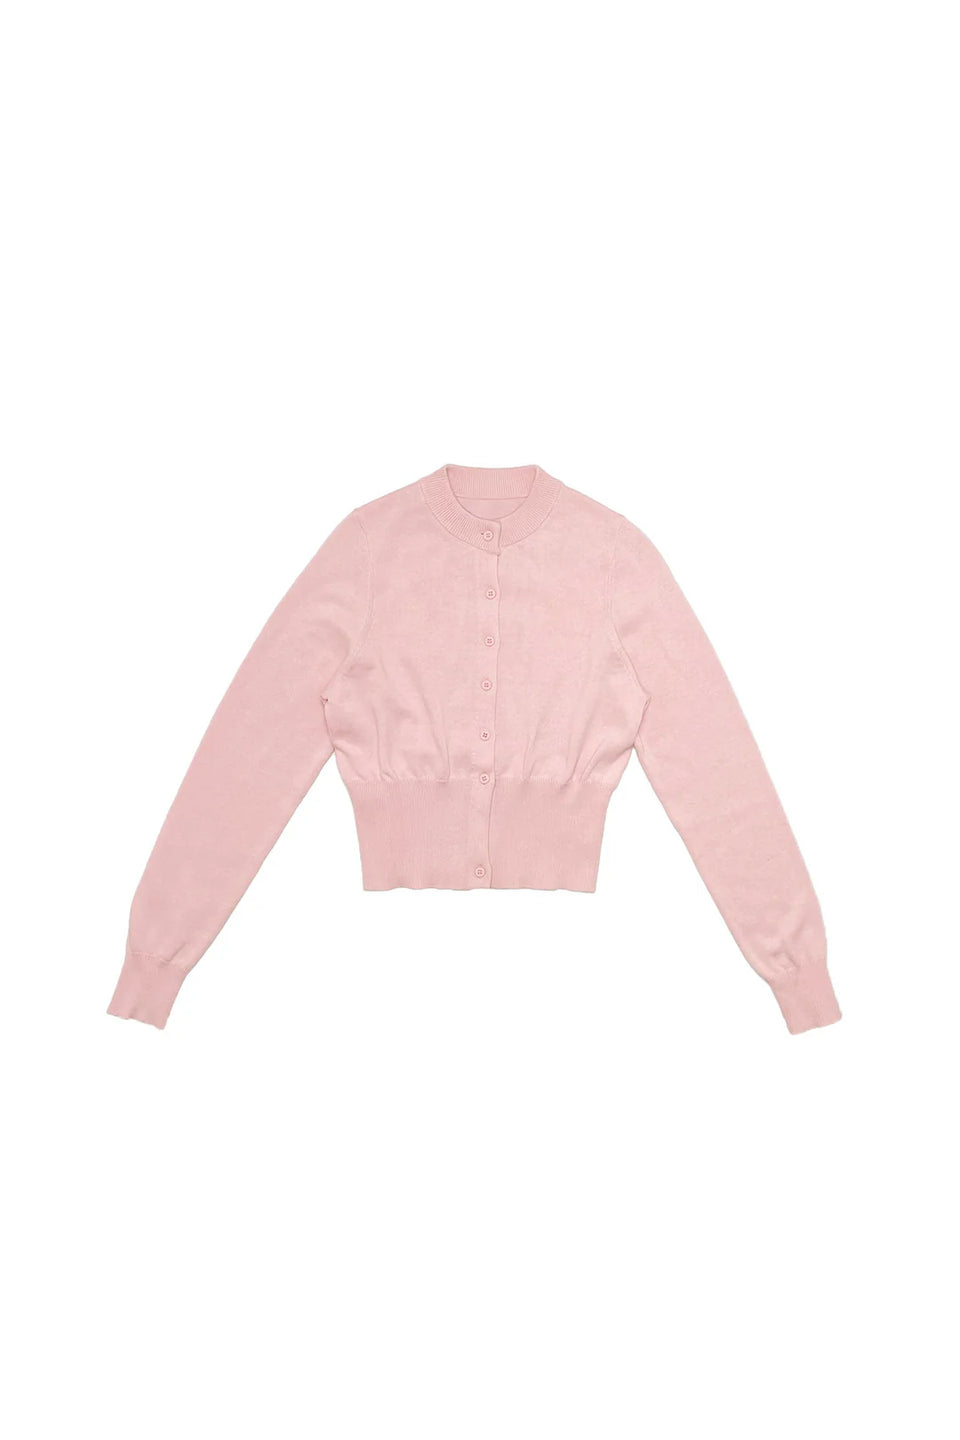 Elle Oh Elle Light Pink Cropped Cardigan